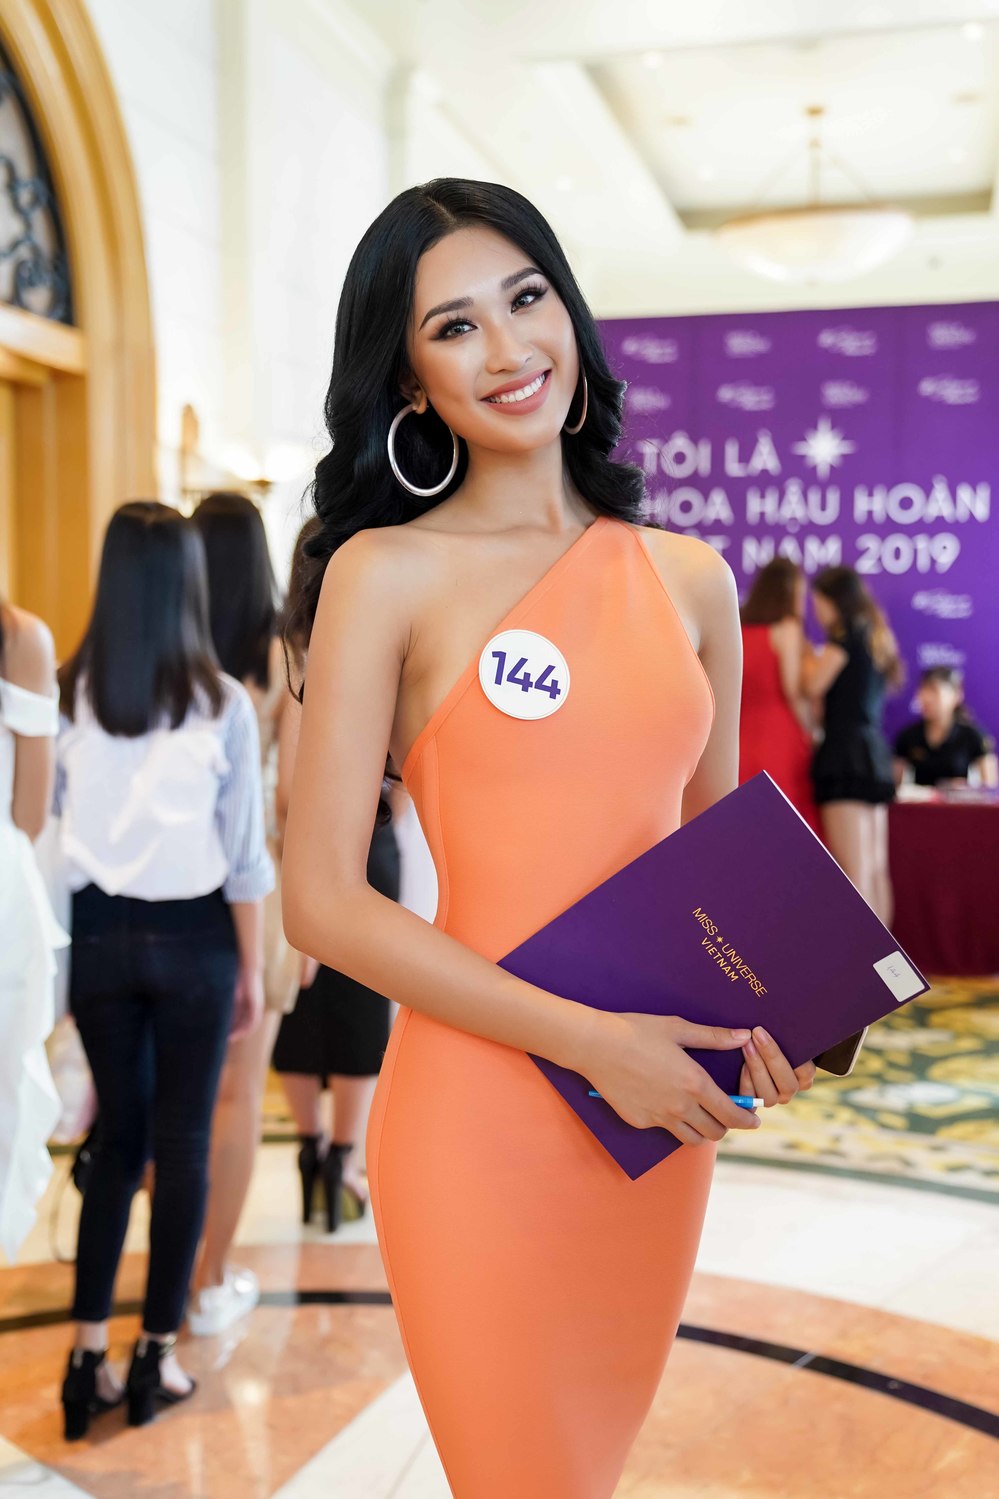  
Anh Thư top 10 Hoa hậu Việt Nam Thế giới 2019 - Tin sao Viet - Tin tuc sao Viet - Scandal sao Viet - Tin tuc cua Sao - Tin cua Sao